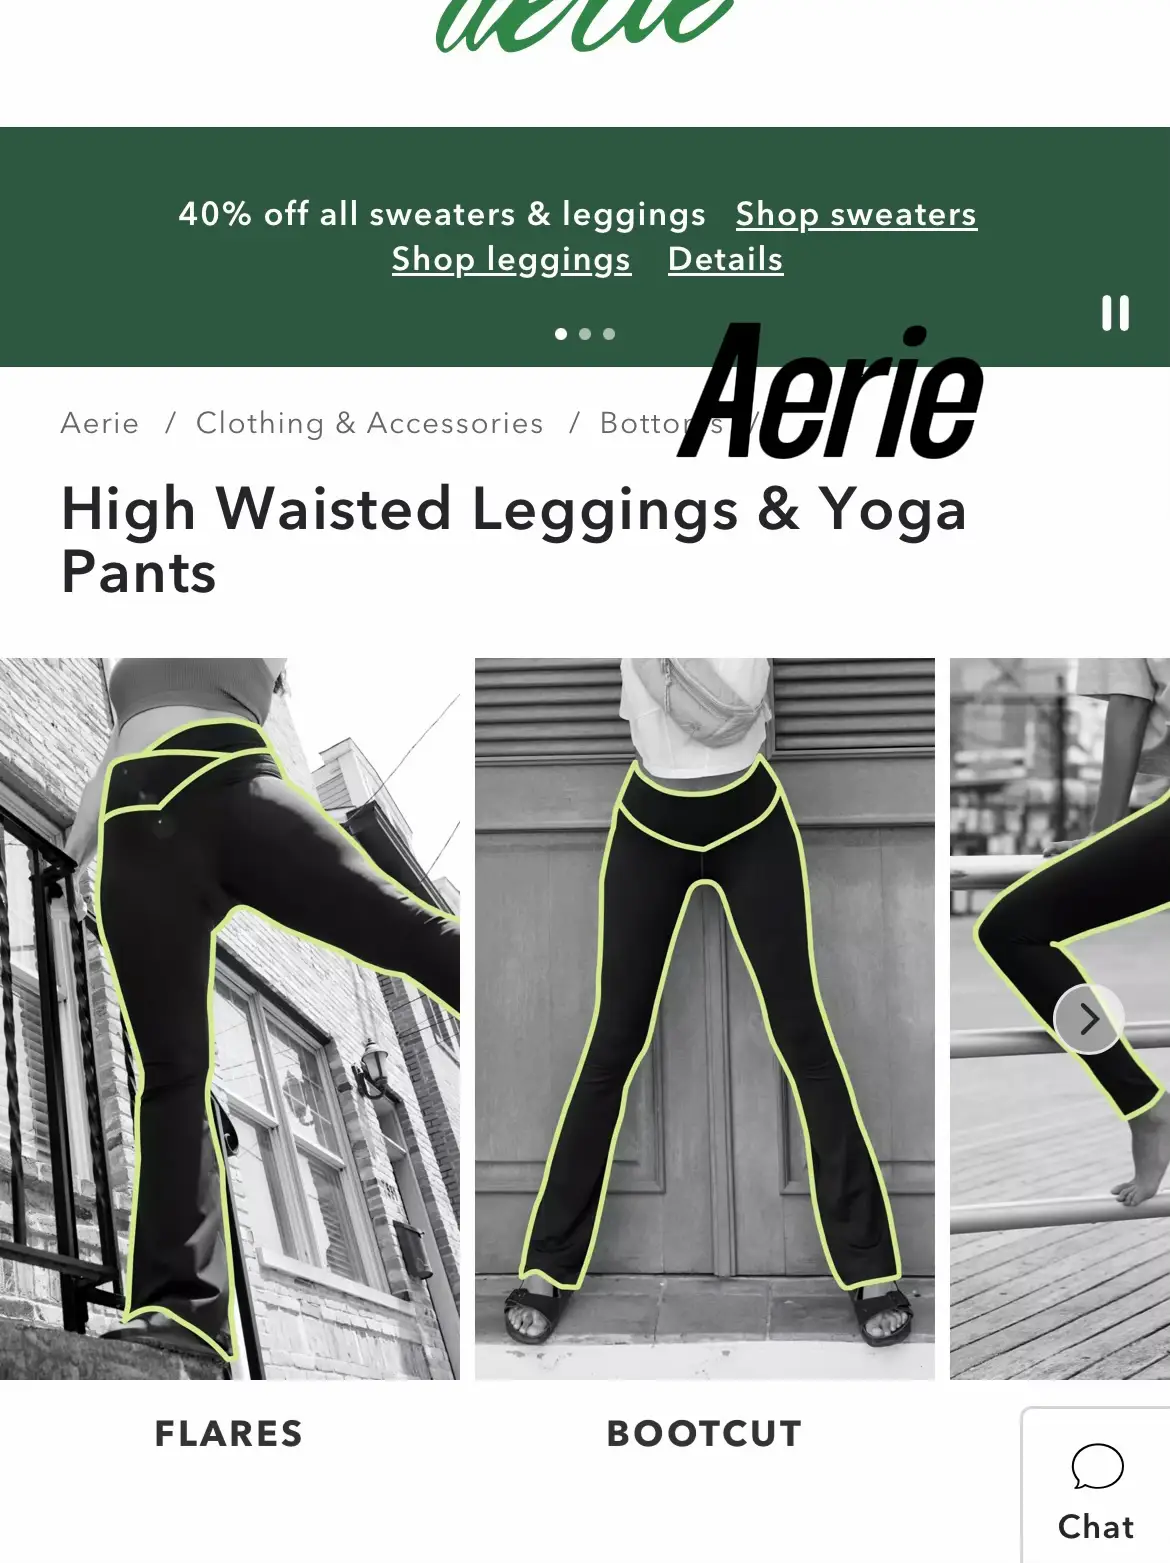 High-Waisted Leggings & Yoga Pants